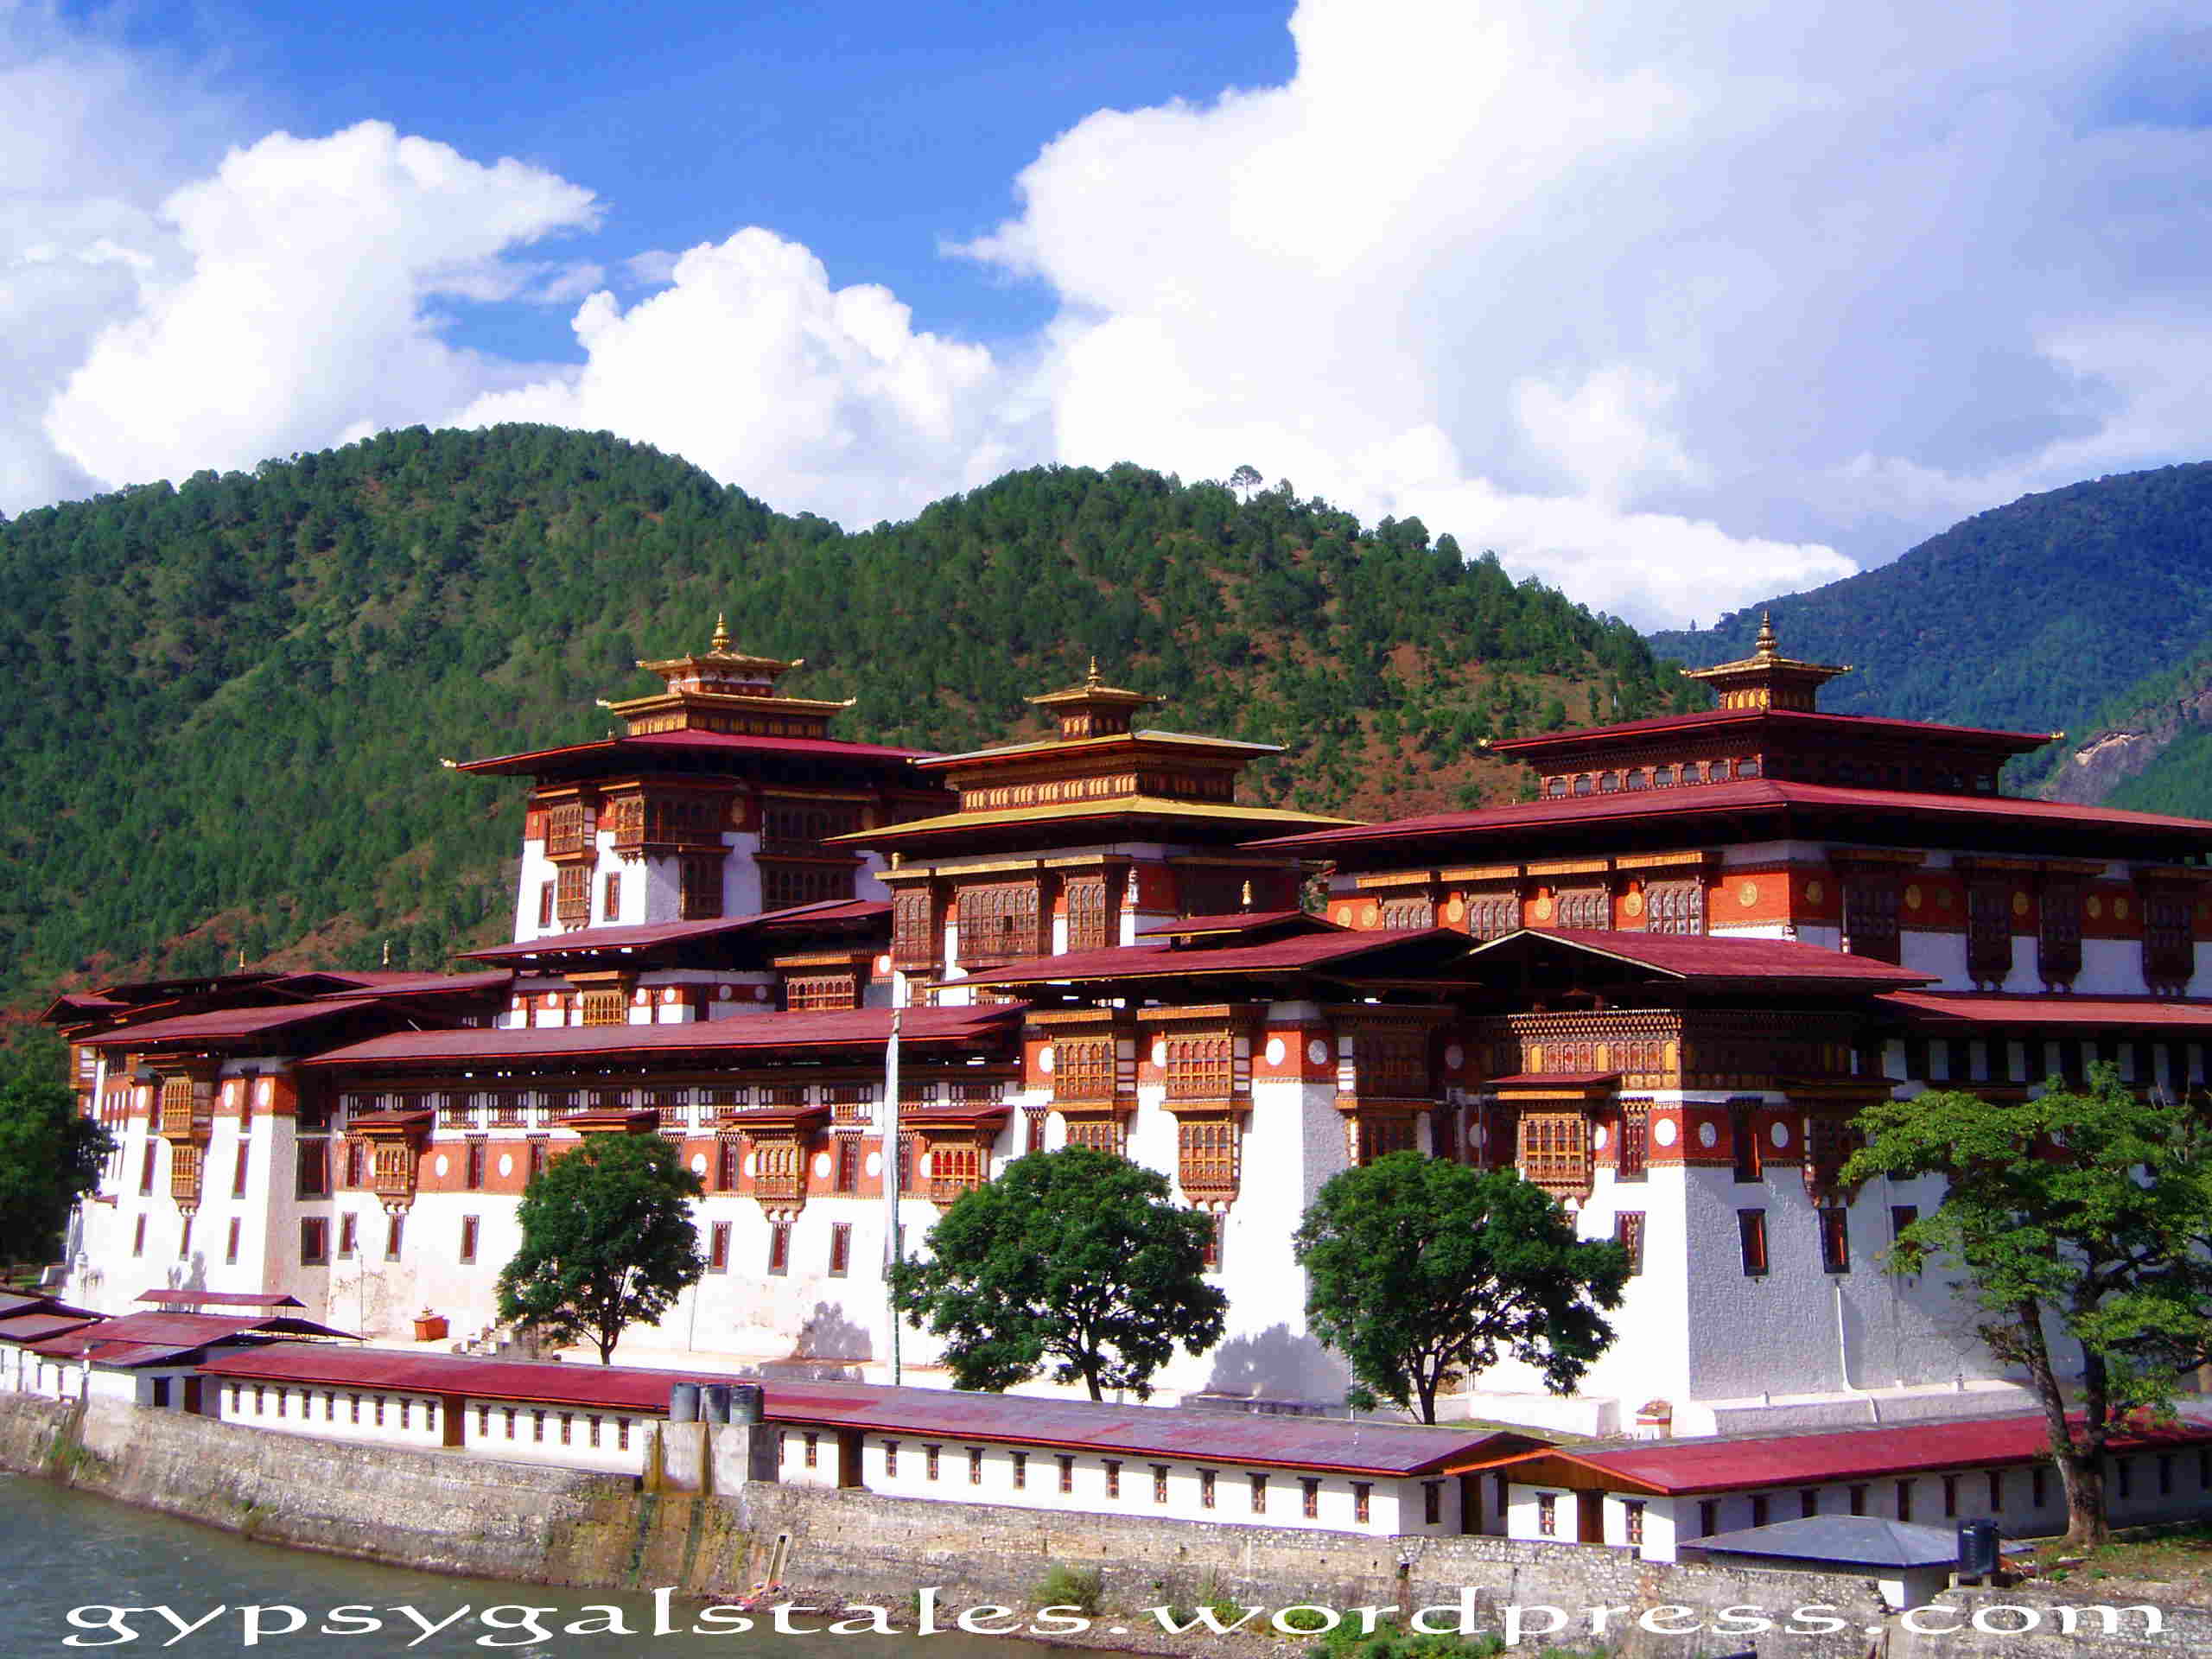 punakhadzong PostCard Moment:Punakha Dzong, Bhutan